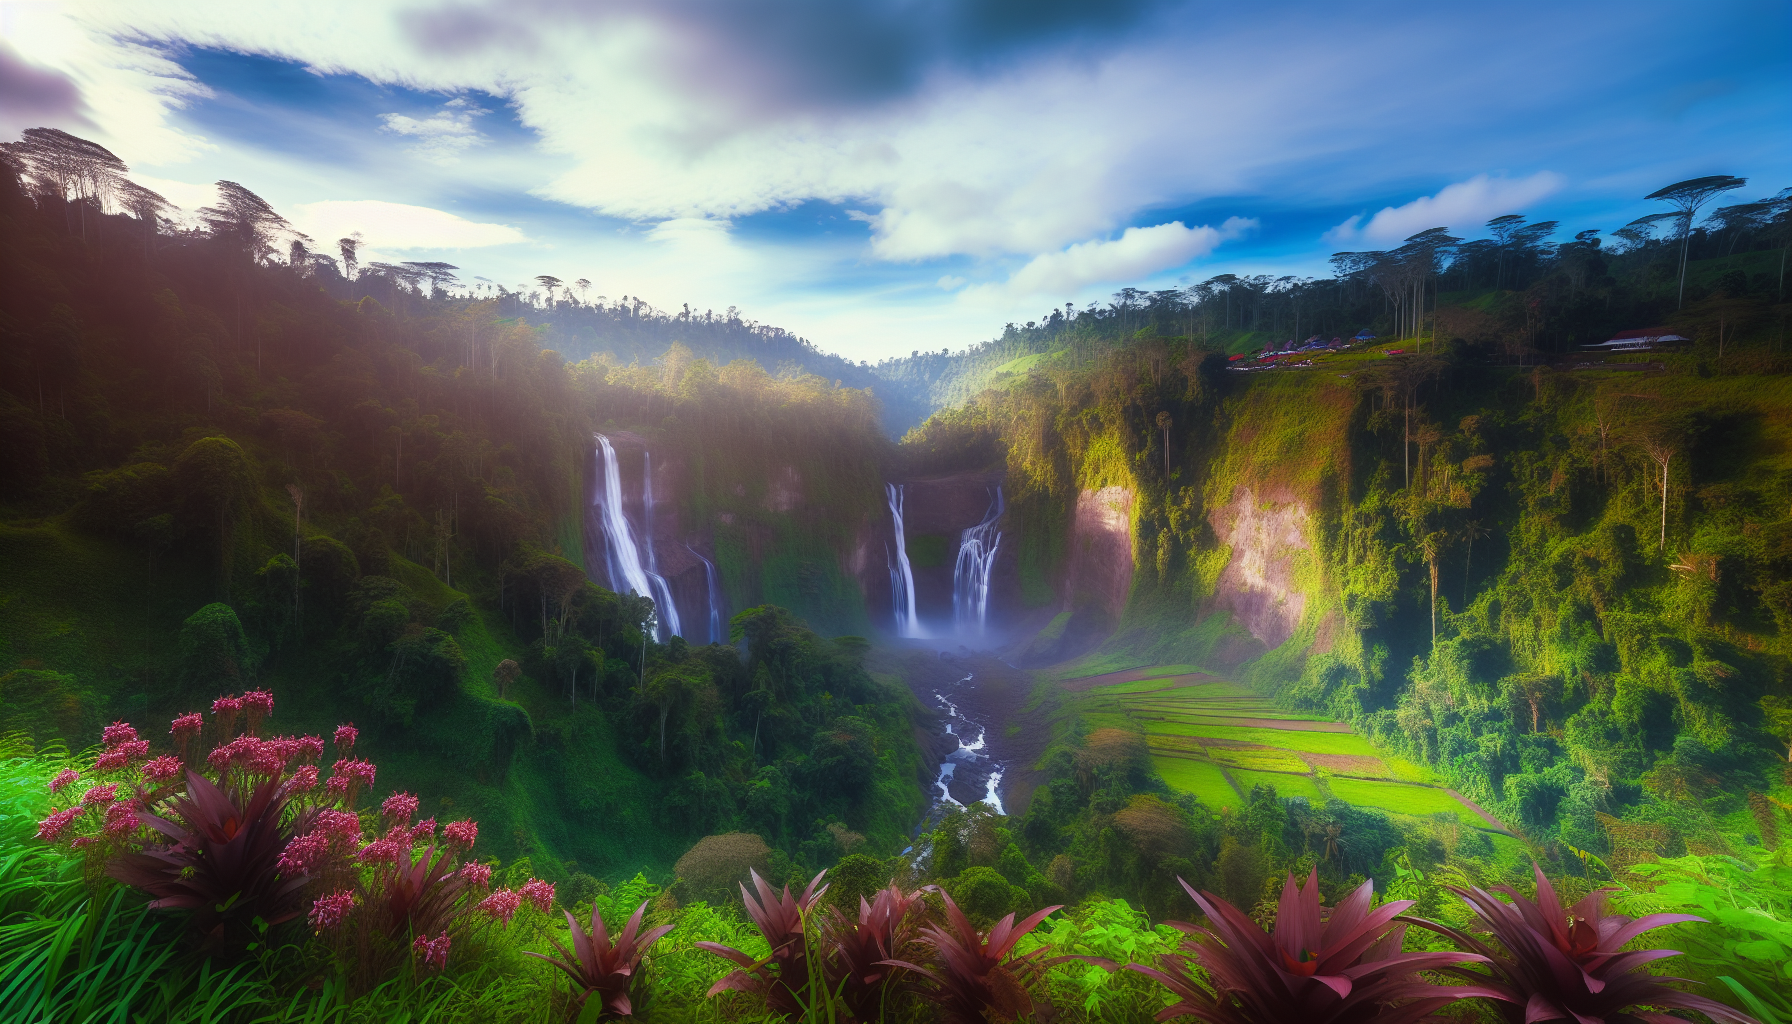 Enchanting Munduk Waterfalls